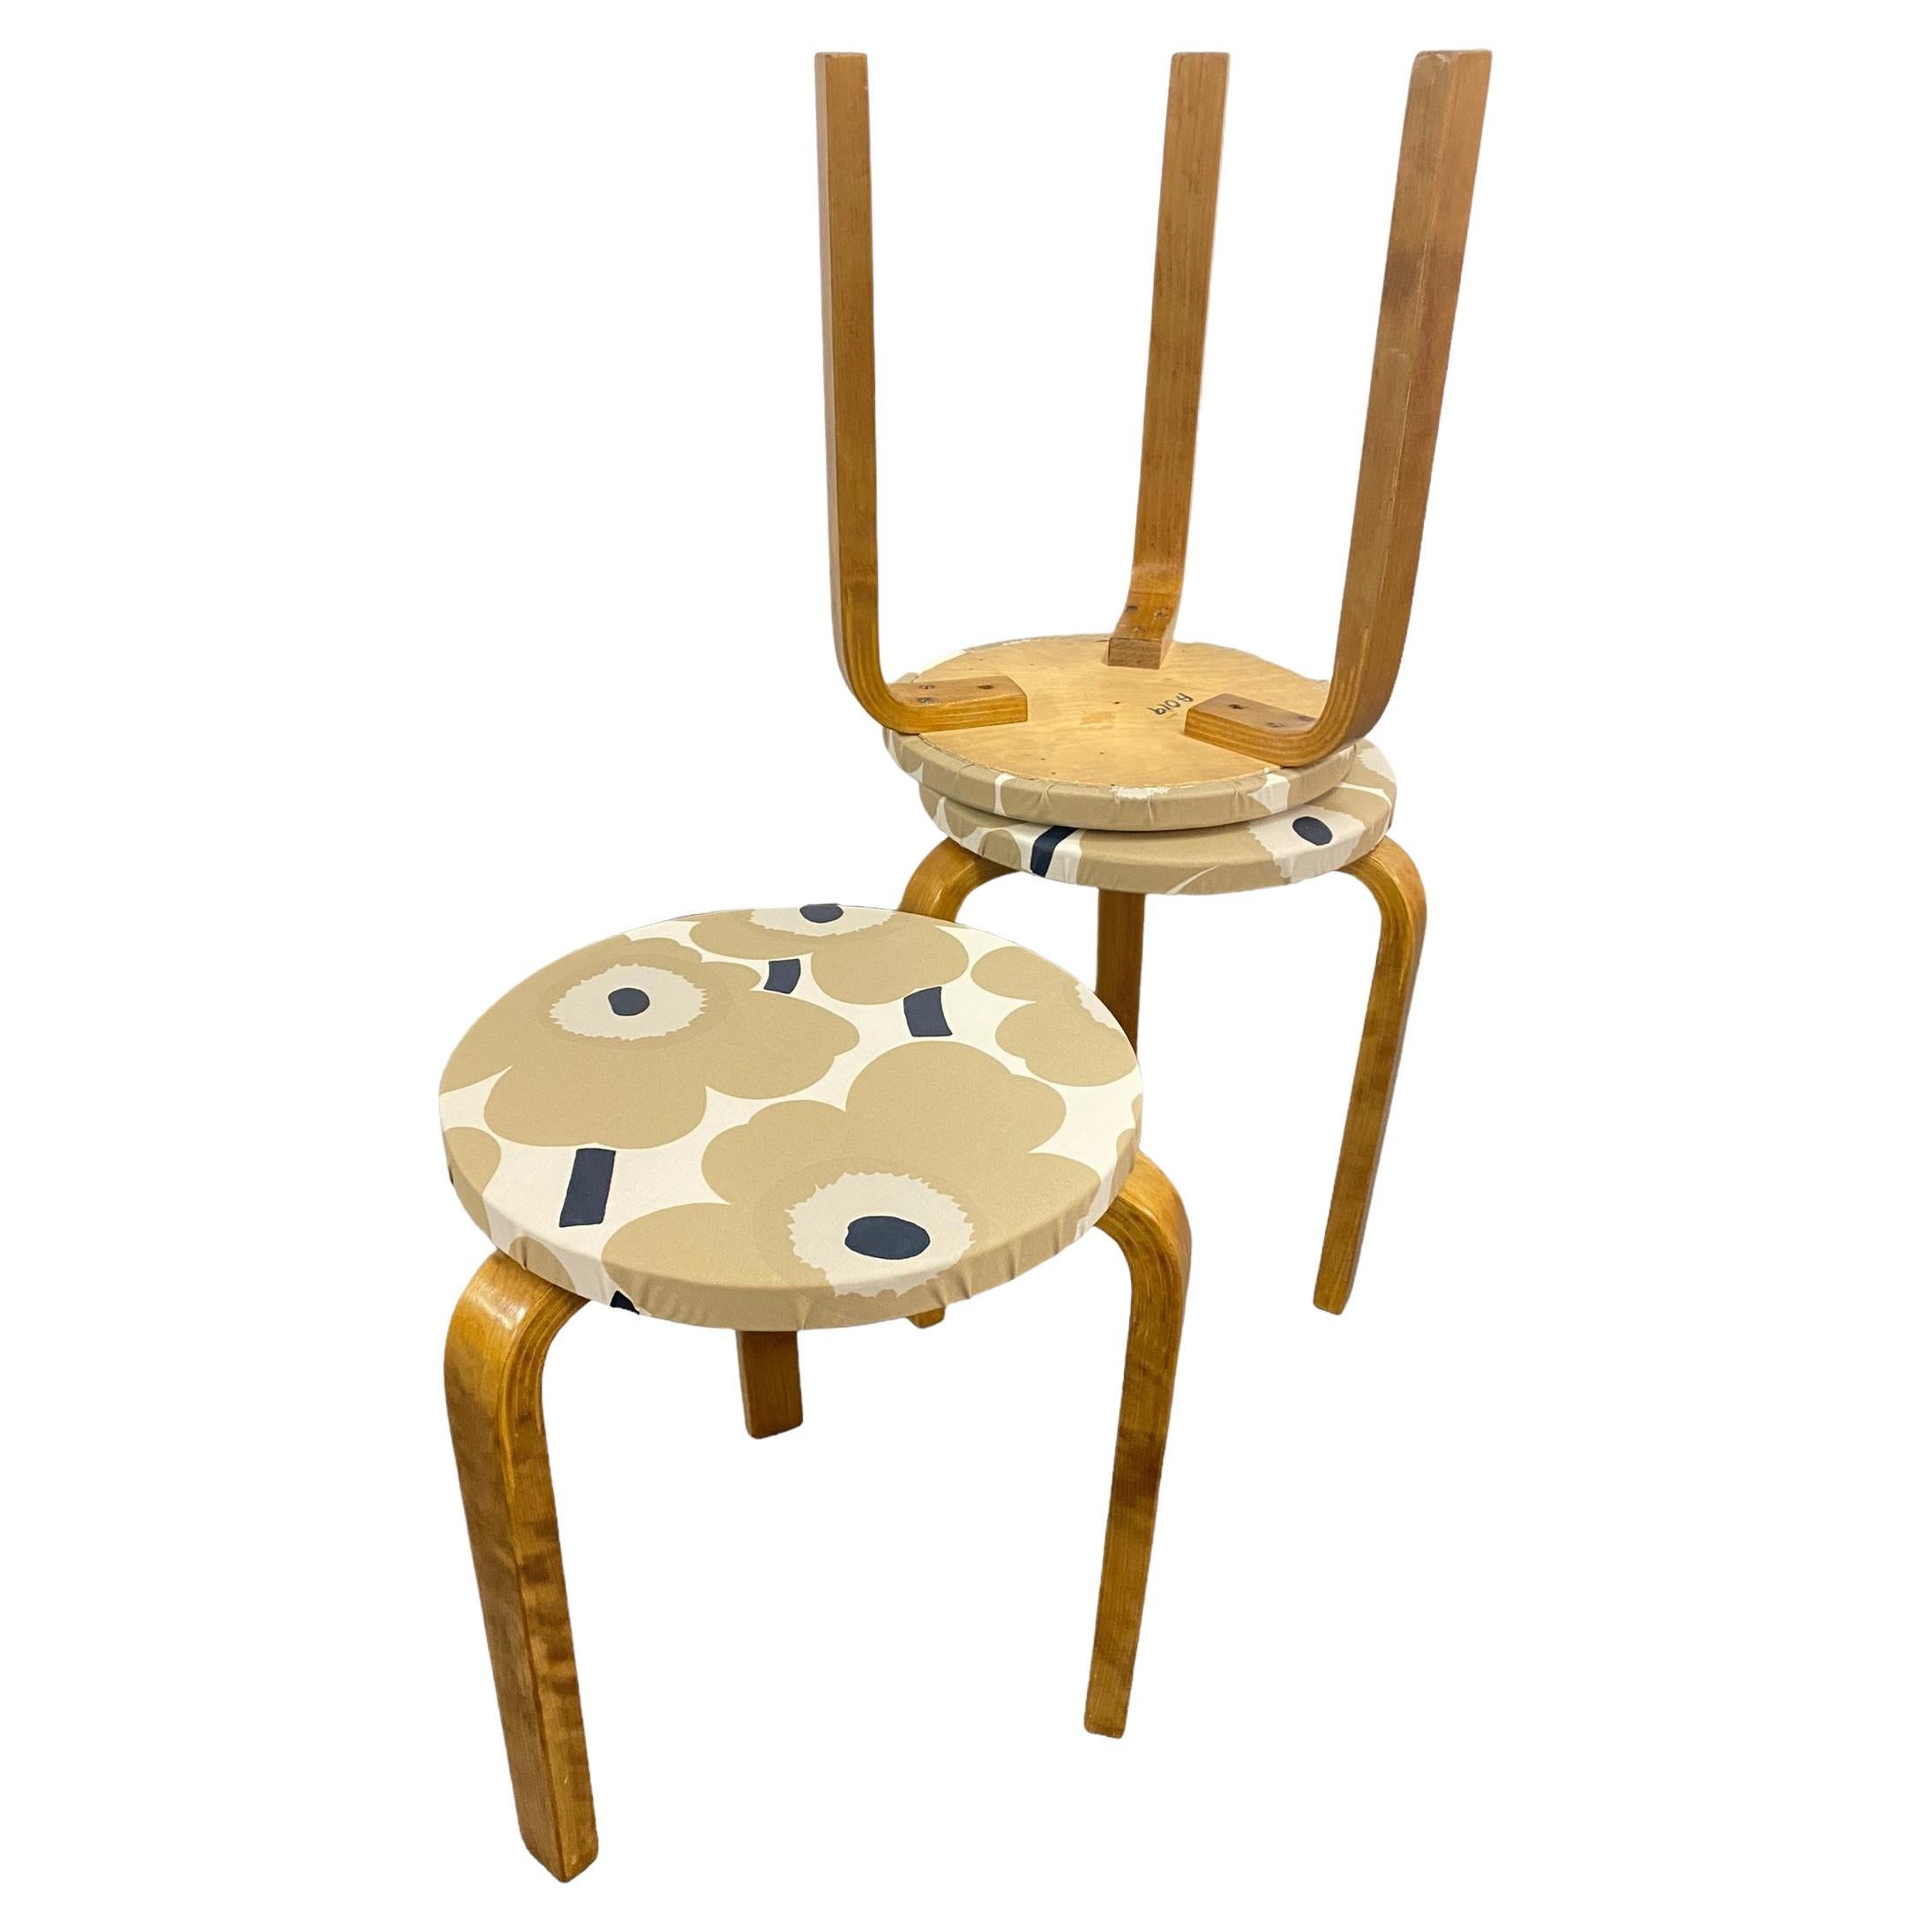 Ces trois tabourets emblématiques d'Alvar Aalto datant des années 1930 sont de magnifiques pièces de mobilier peu encombrantes au design intemporel. Les pieds sont montés directement sur la face inférieure de l'assise ronde, sans qu'il soit